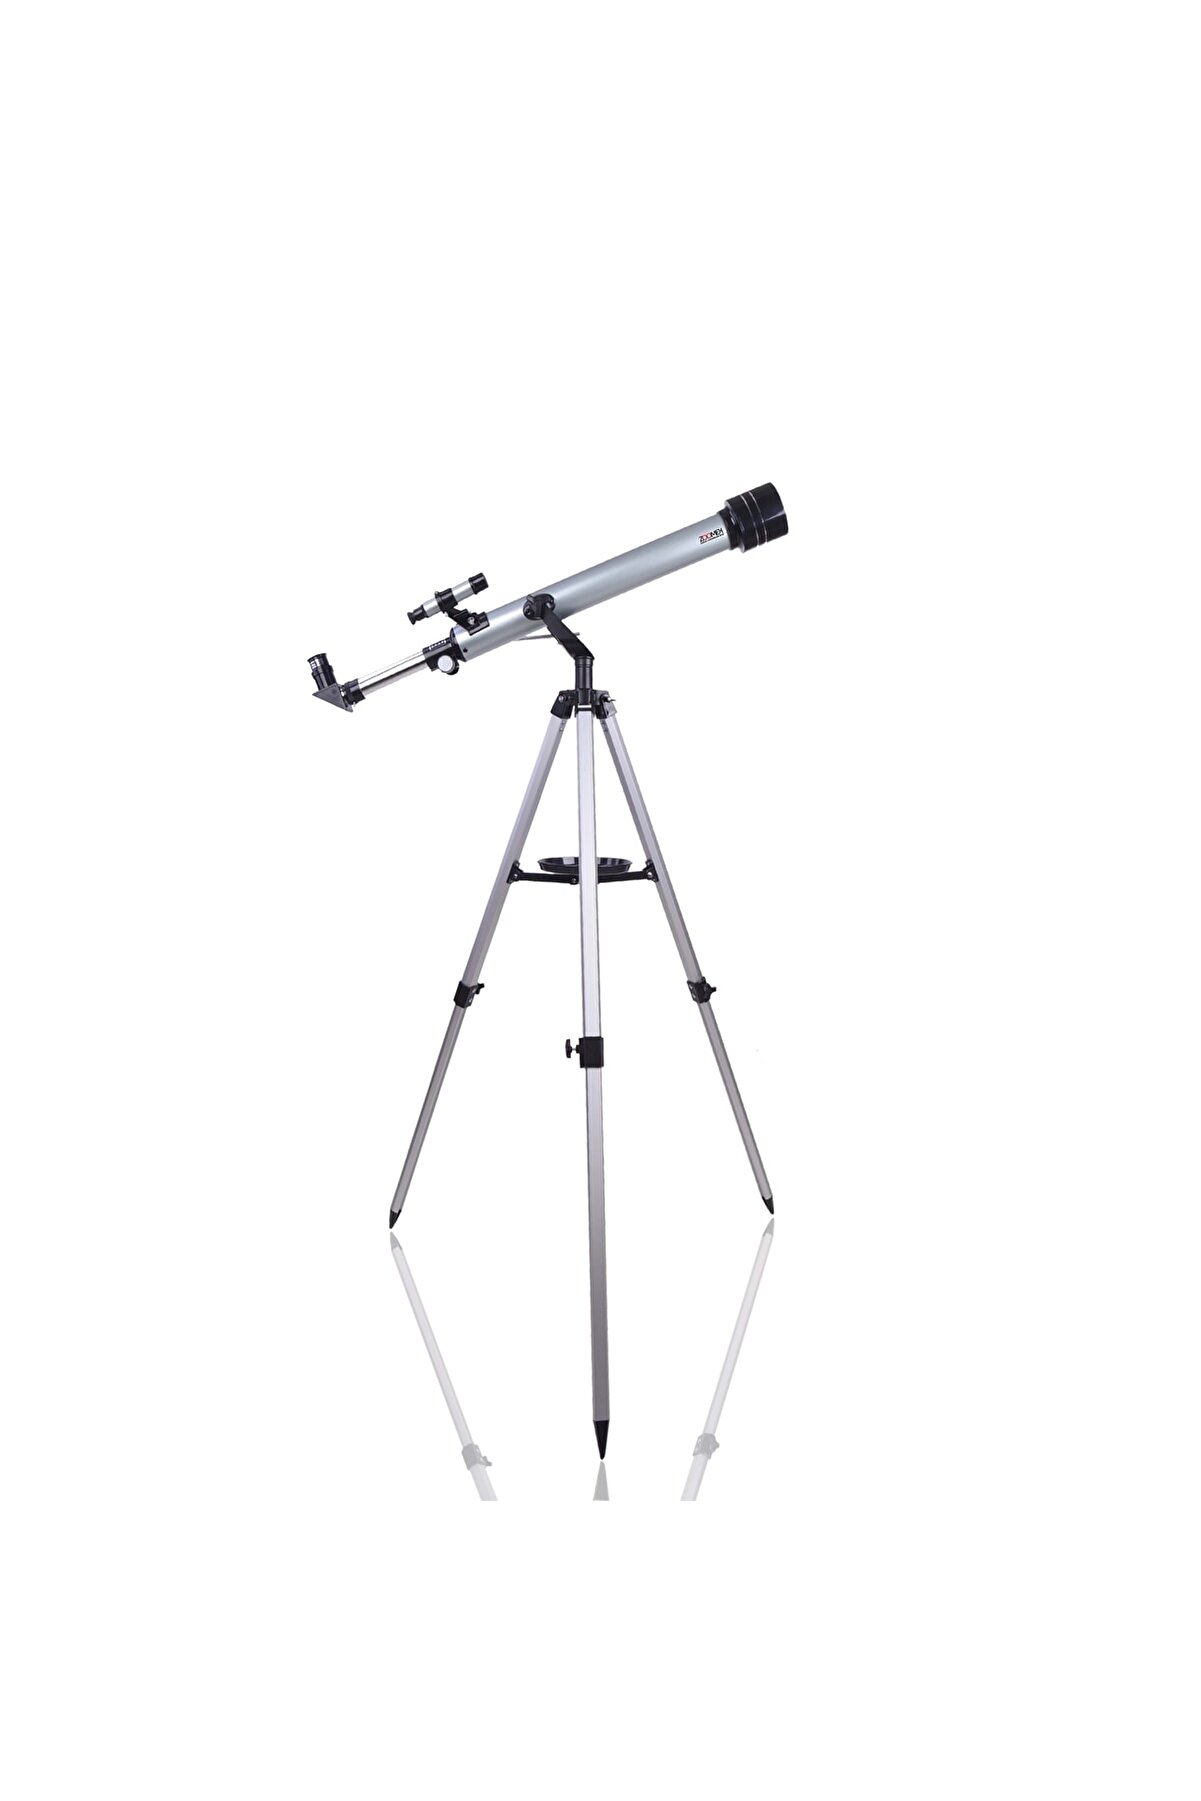 Zoomex 60f700tx Astronomik Teleskop 350 Kat Yakınlaştırma + Taşıma Çantası Hediyeli